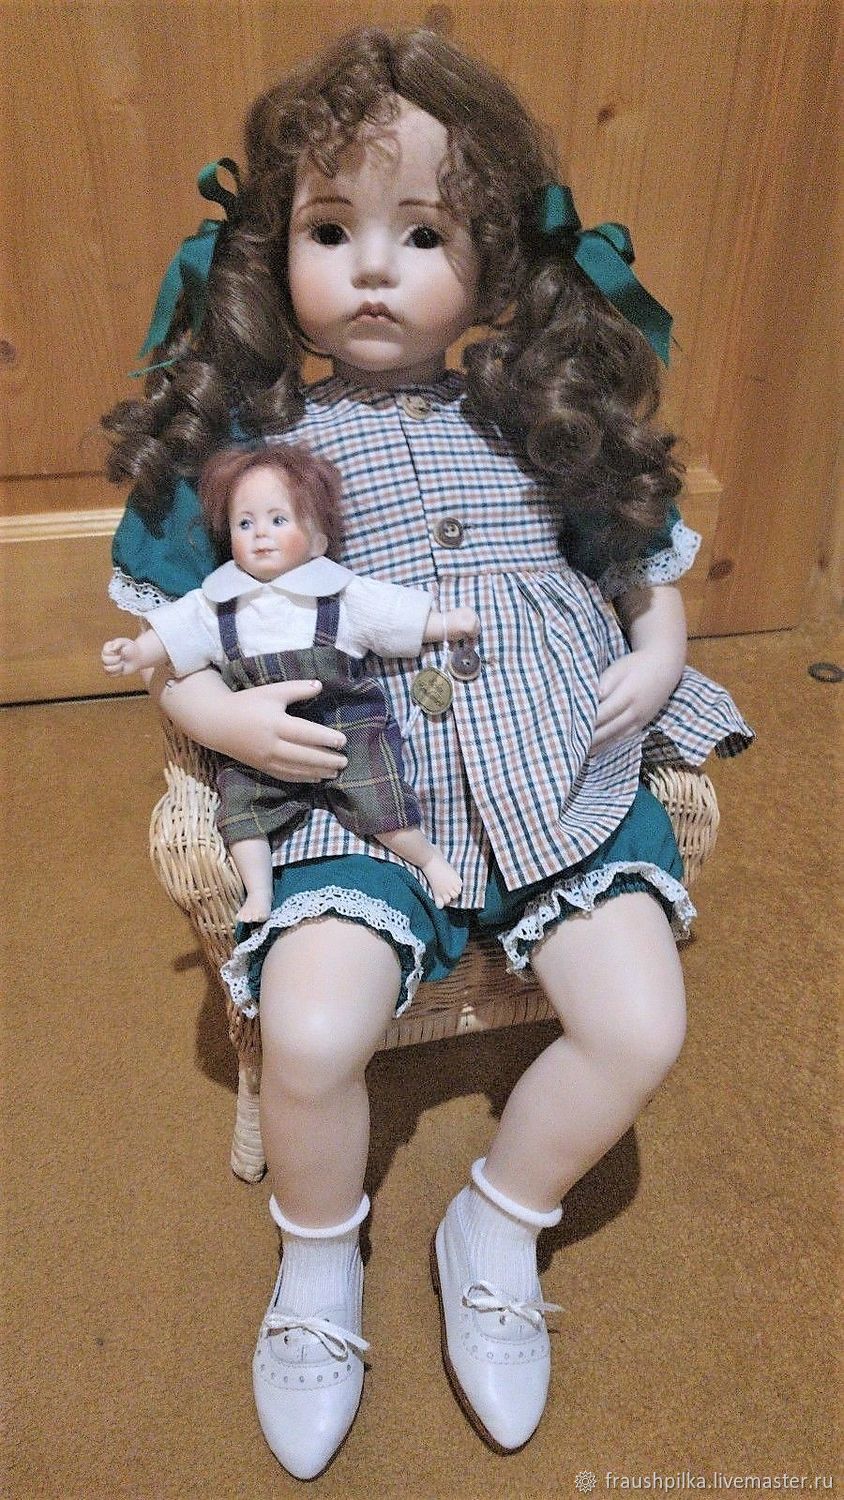 deanna doll